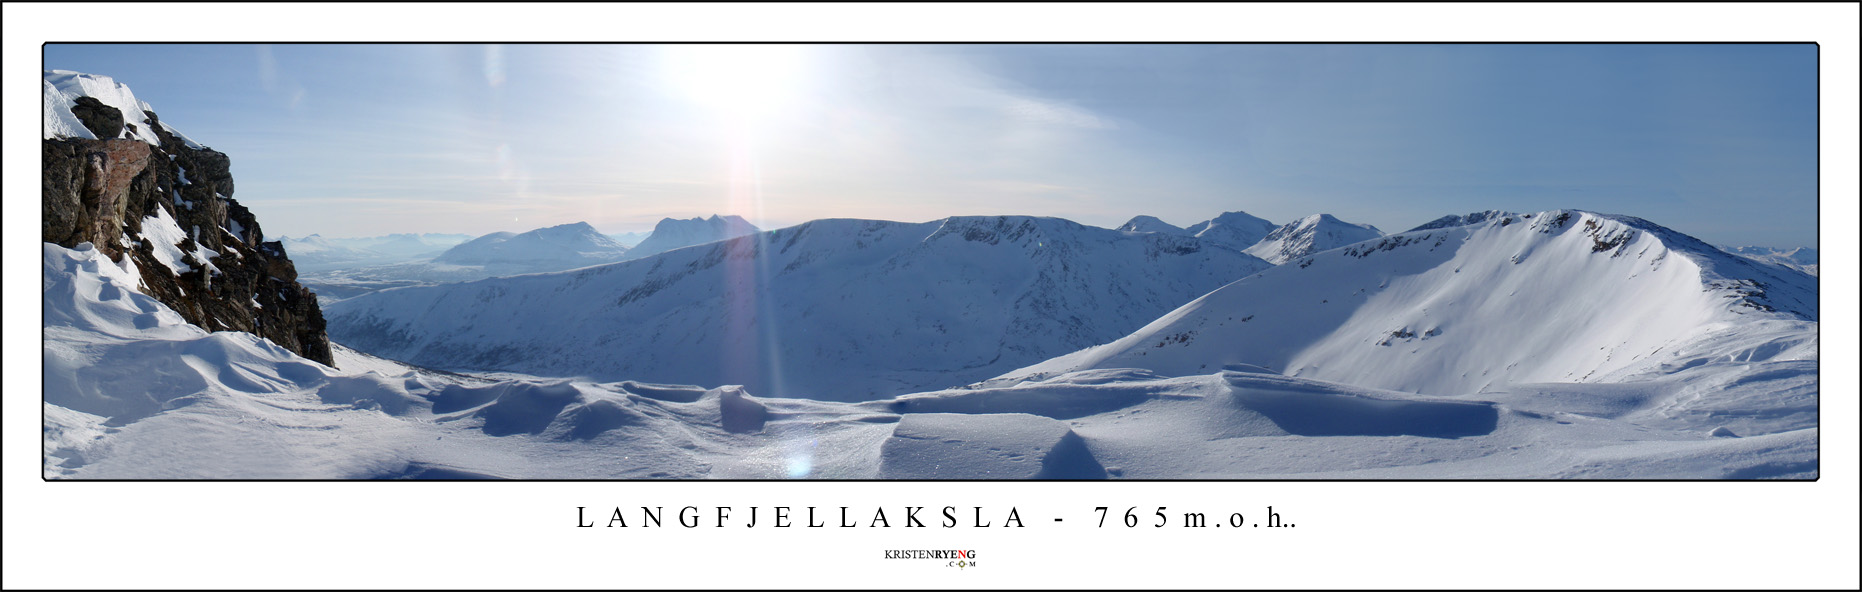 Panorama-Langfjellaksla.jpg - Utsikt fra Langfjellaksla. Til høyre i bildet ses Straumsaksla. Dato : 10.03.09